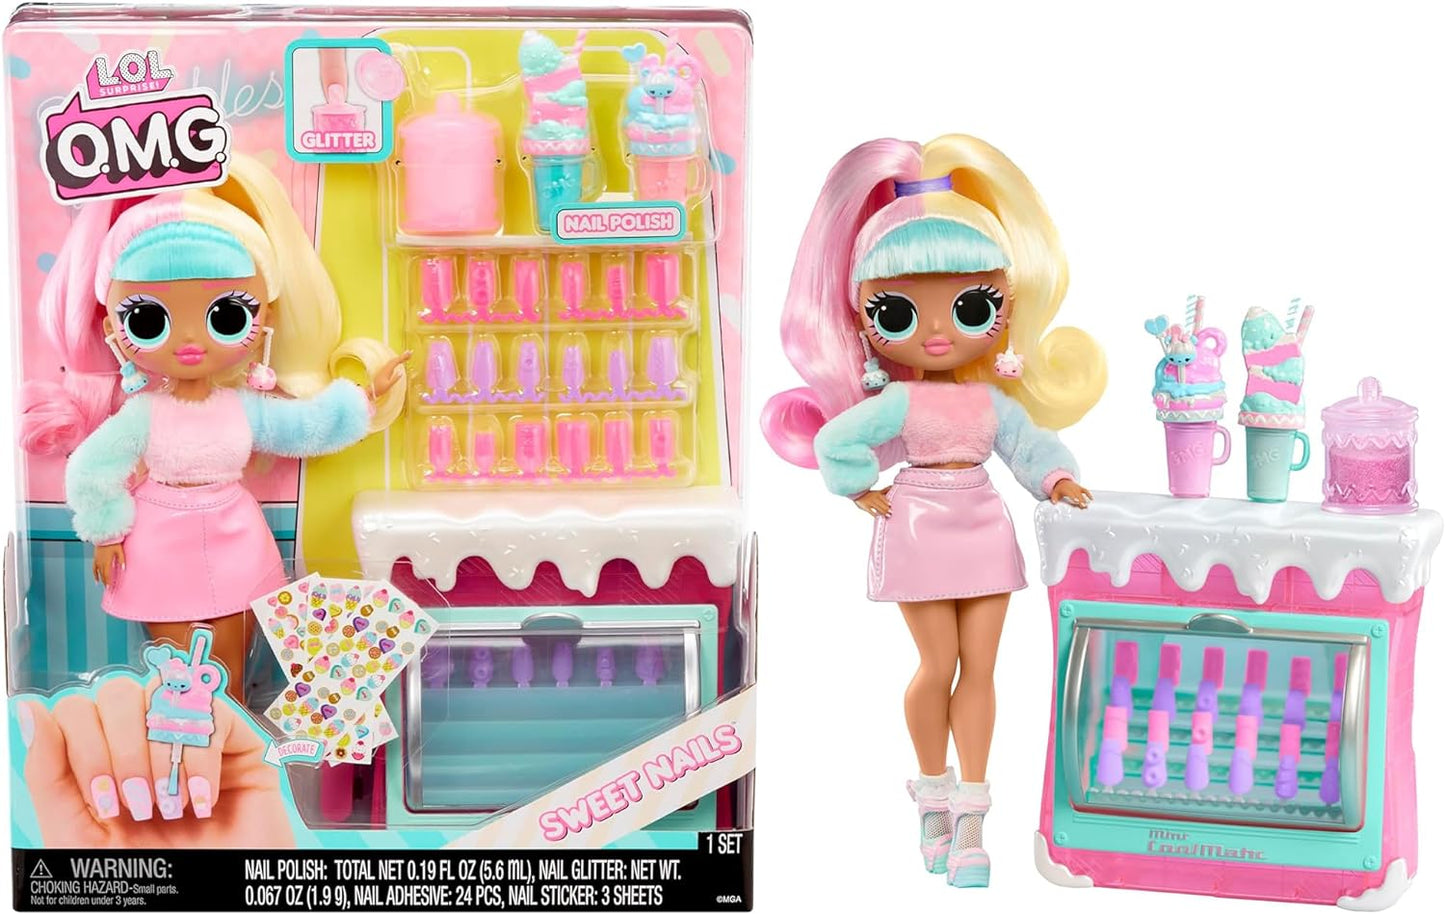 LOL Surprise OMG Sweet Nails - Candylicious Sprinkles Shop - Com 15 surpresas, incluindo esmalte de verdade, unhas prensadas, folhas de adesivos, glitter, 1 boneca fashion e muito mais - ótimo para crianças a partir de 4 anos